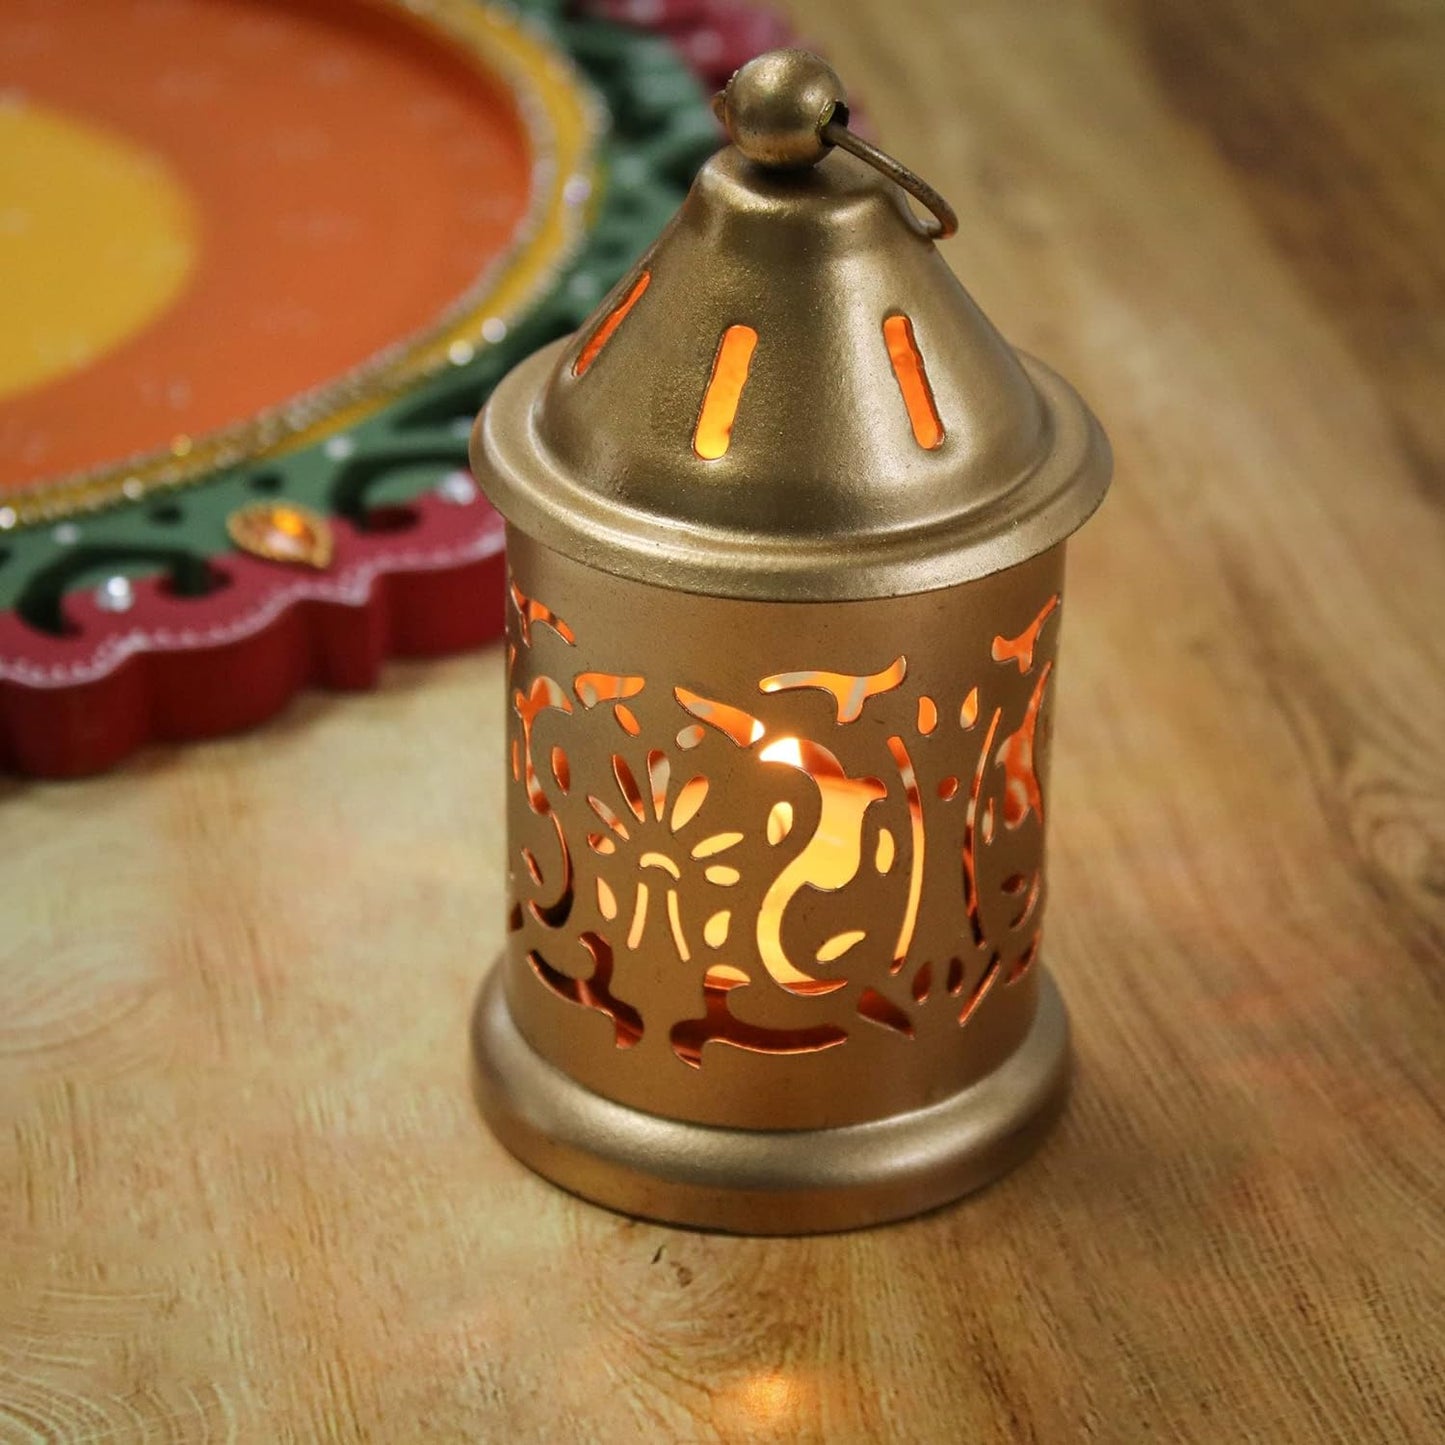 Rgyan Decorative Metal Hanging Lantern Gold / Lantern for Home Decoration (Pack of 2)